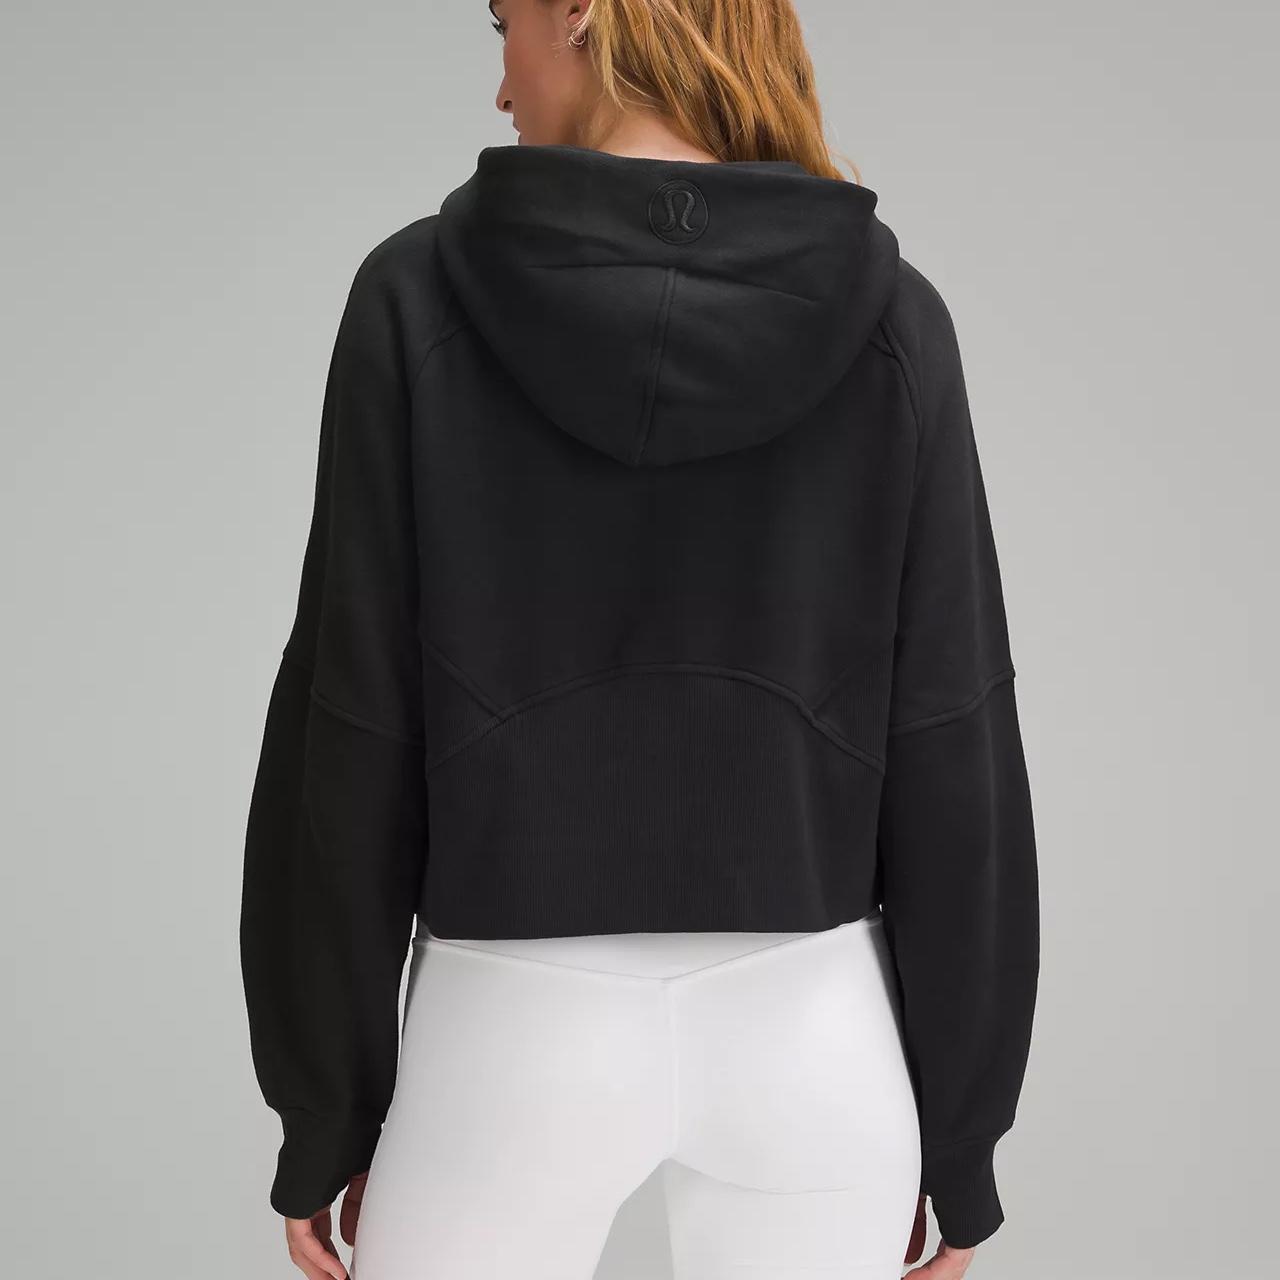 Lululemon women's full zip jacket size 10 Good clean - Depop